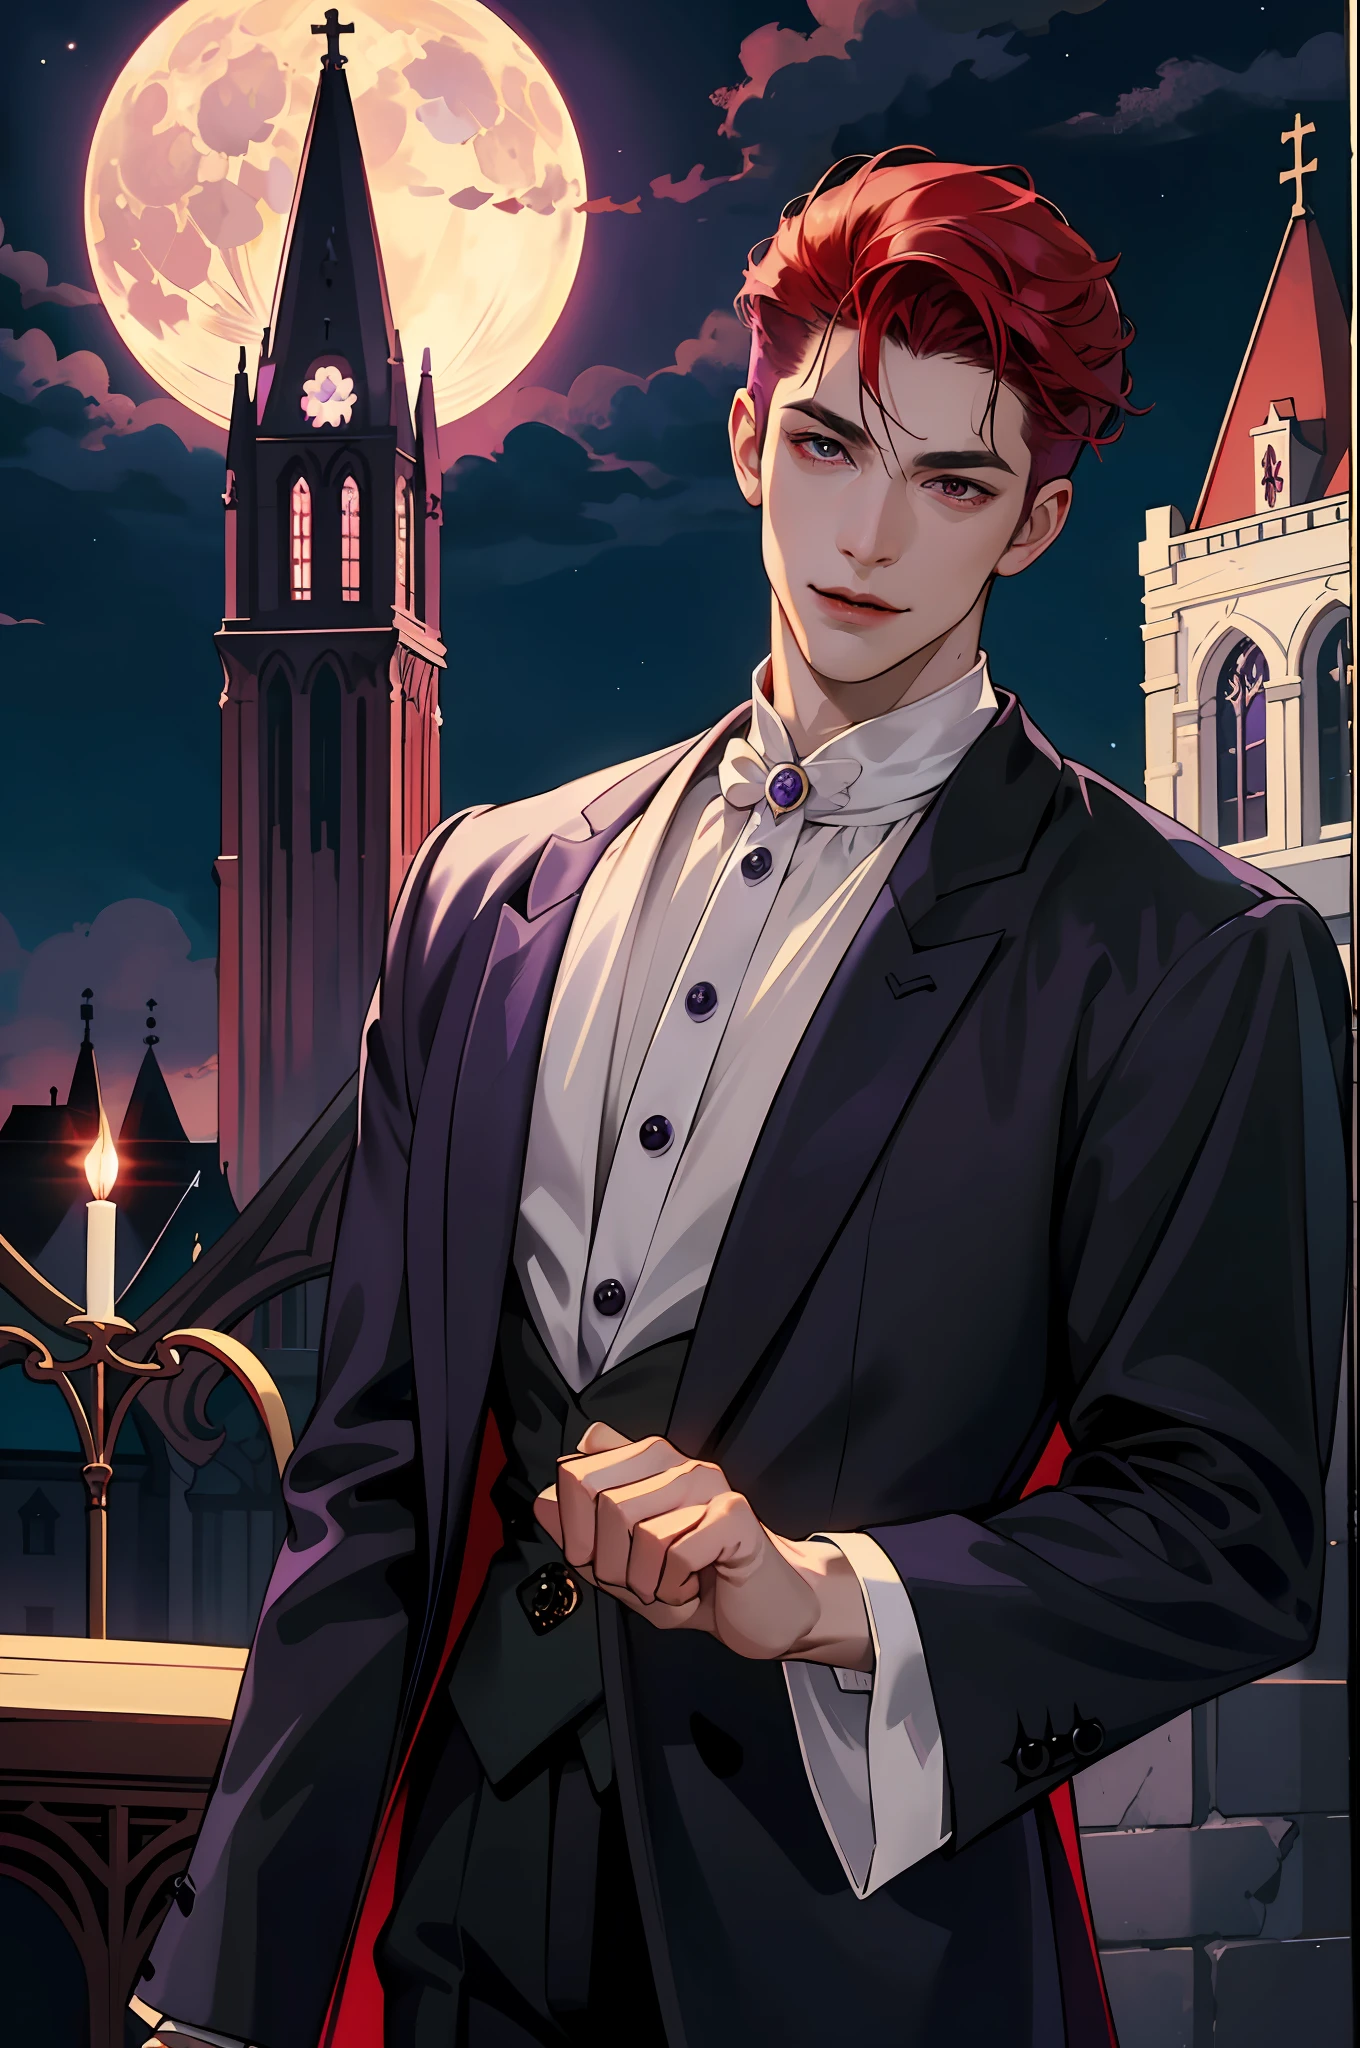 これは本物の吸血鬼がどのように見えるかです! アンティークの吸血鬼の服, エレガント, 紳士的な. 彼はフレンドリーに微笑んでいます, 彼の赤い髪は鮮やかです, 彼の赤い目は完璧な肌に映えて輝いている. 背景には紫色の教会の窓, 背後に月明かりが反射して. これはすべて美しく暗い光の中にあります, 見た目が素晴らしい。 (高品質: 1.2, 夜の教会: 1.5, アンティークのヴァンパイアの衣装: 1.4) (((夜に))) (挑発的な光, 神秘的な闇) (((バイオレットムーン))) 定義された顔) 完璧な手)